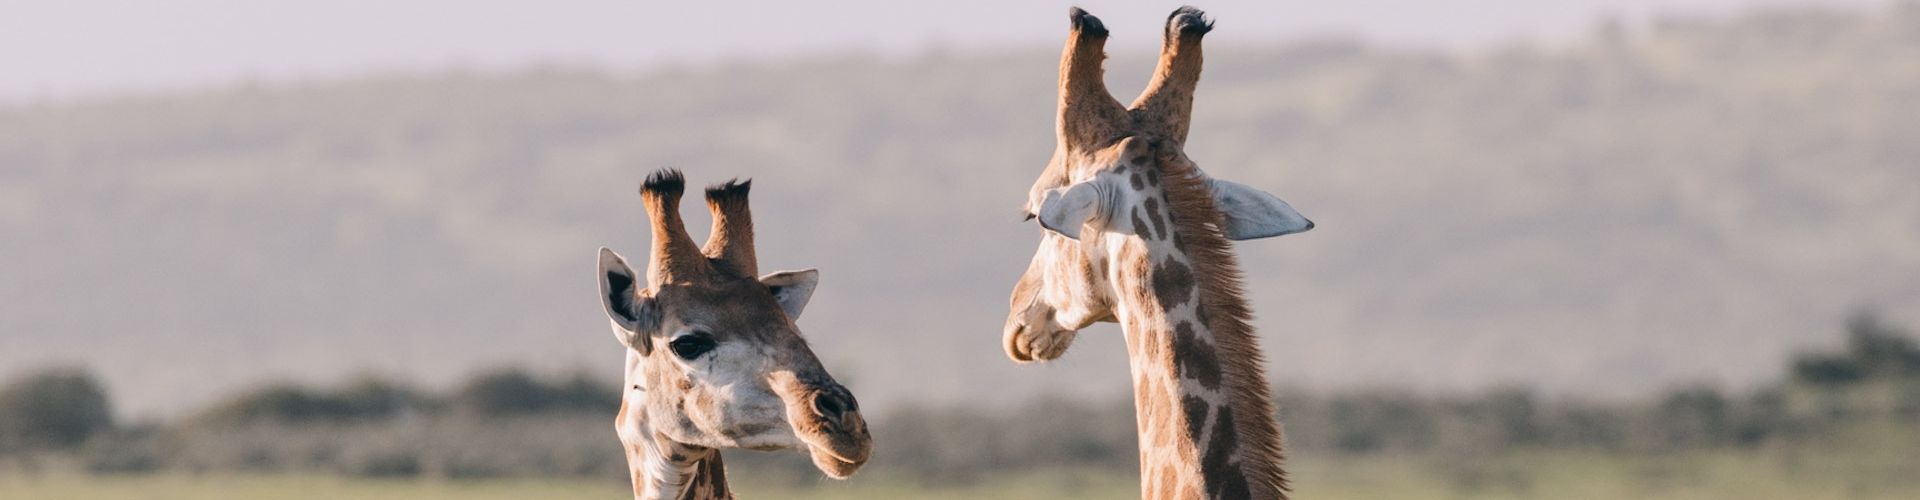 Two giraffes having a conversation